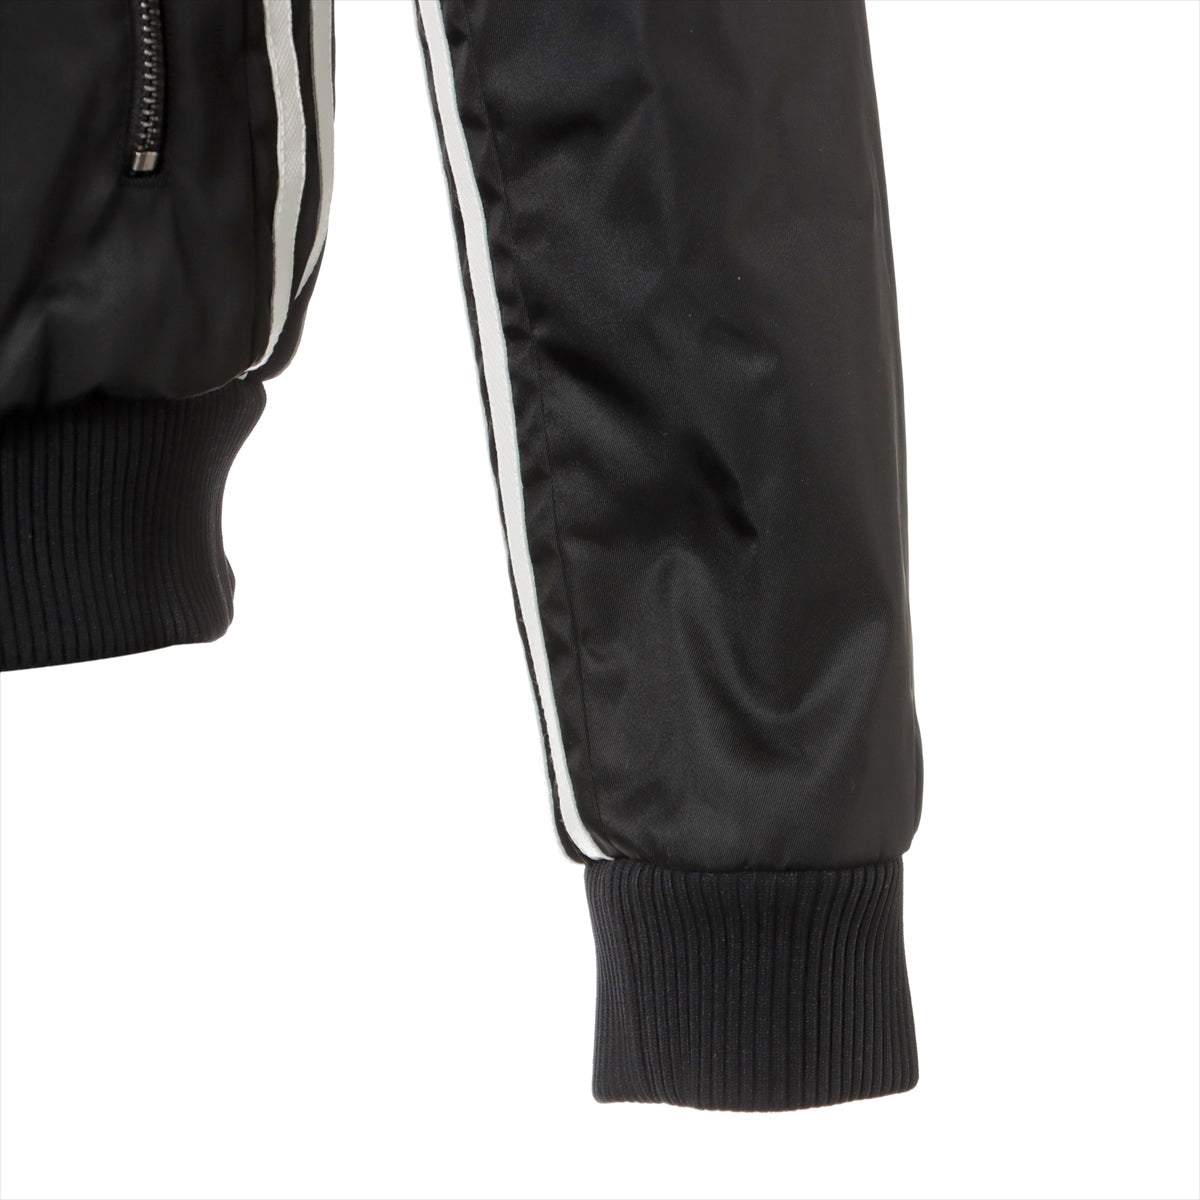 Prada x Adidas Triangle logo 21AW Nylon Blouson 44 Men's Black  RE-NYLON BOMBER JACKET SGB936